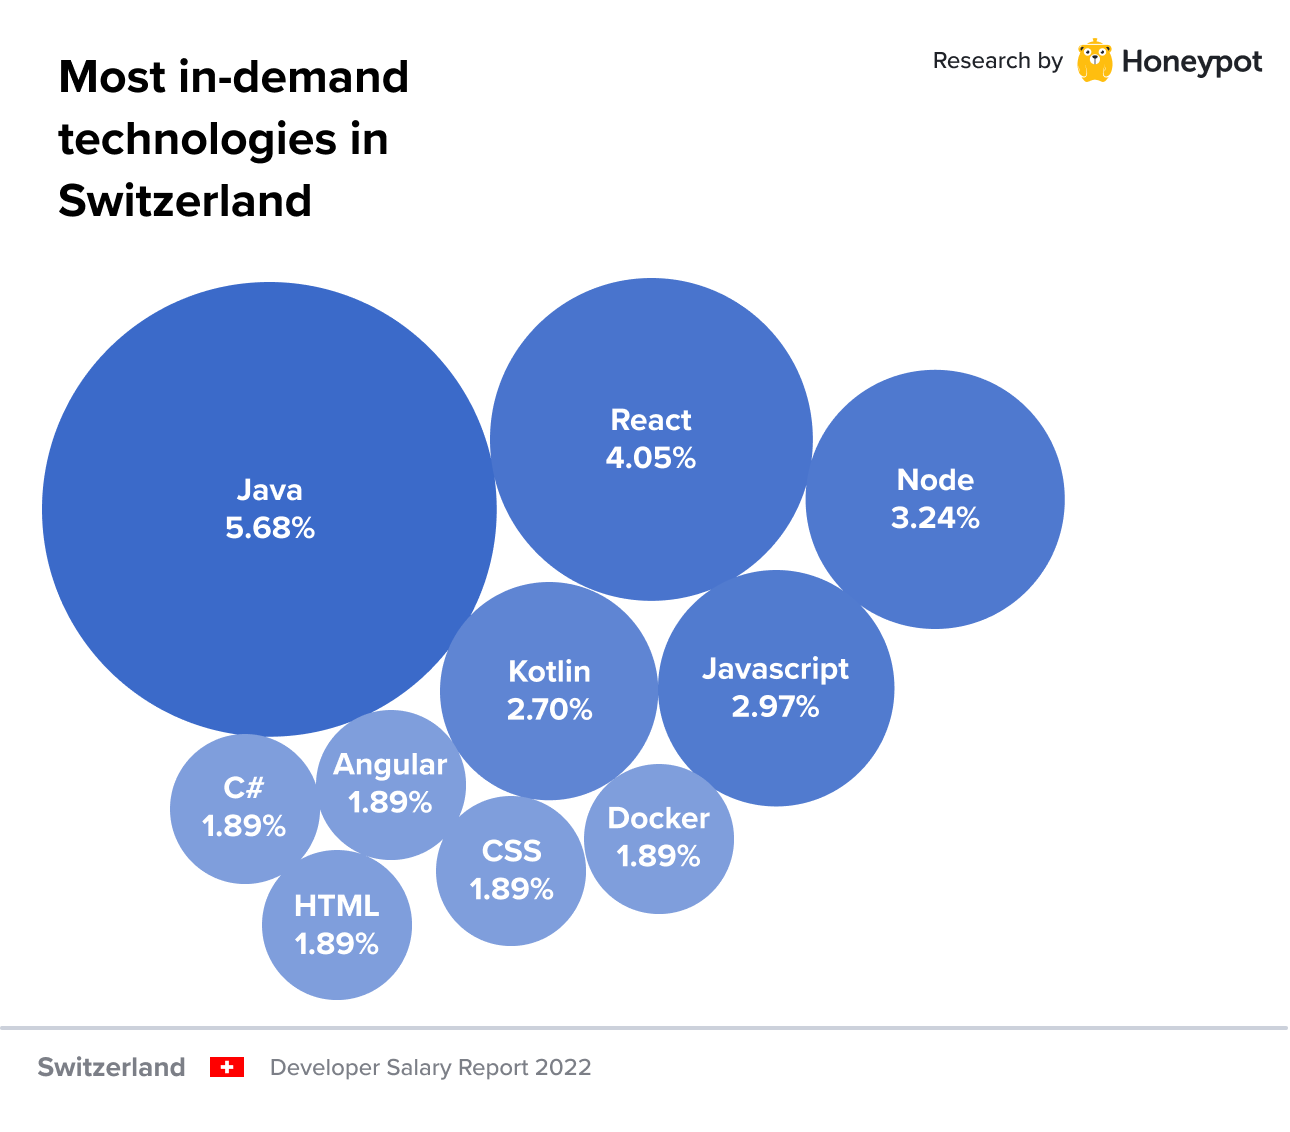 Most in-demand technologies in Switzerland